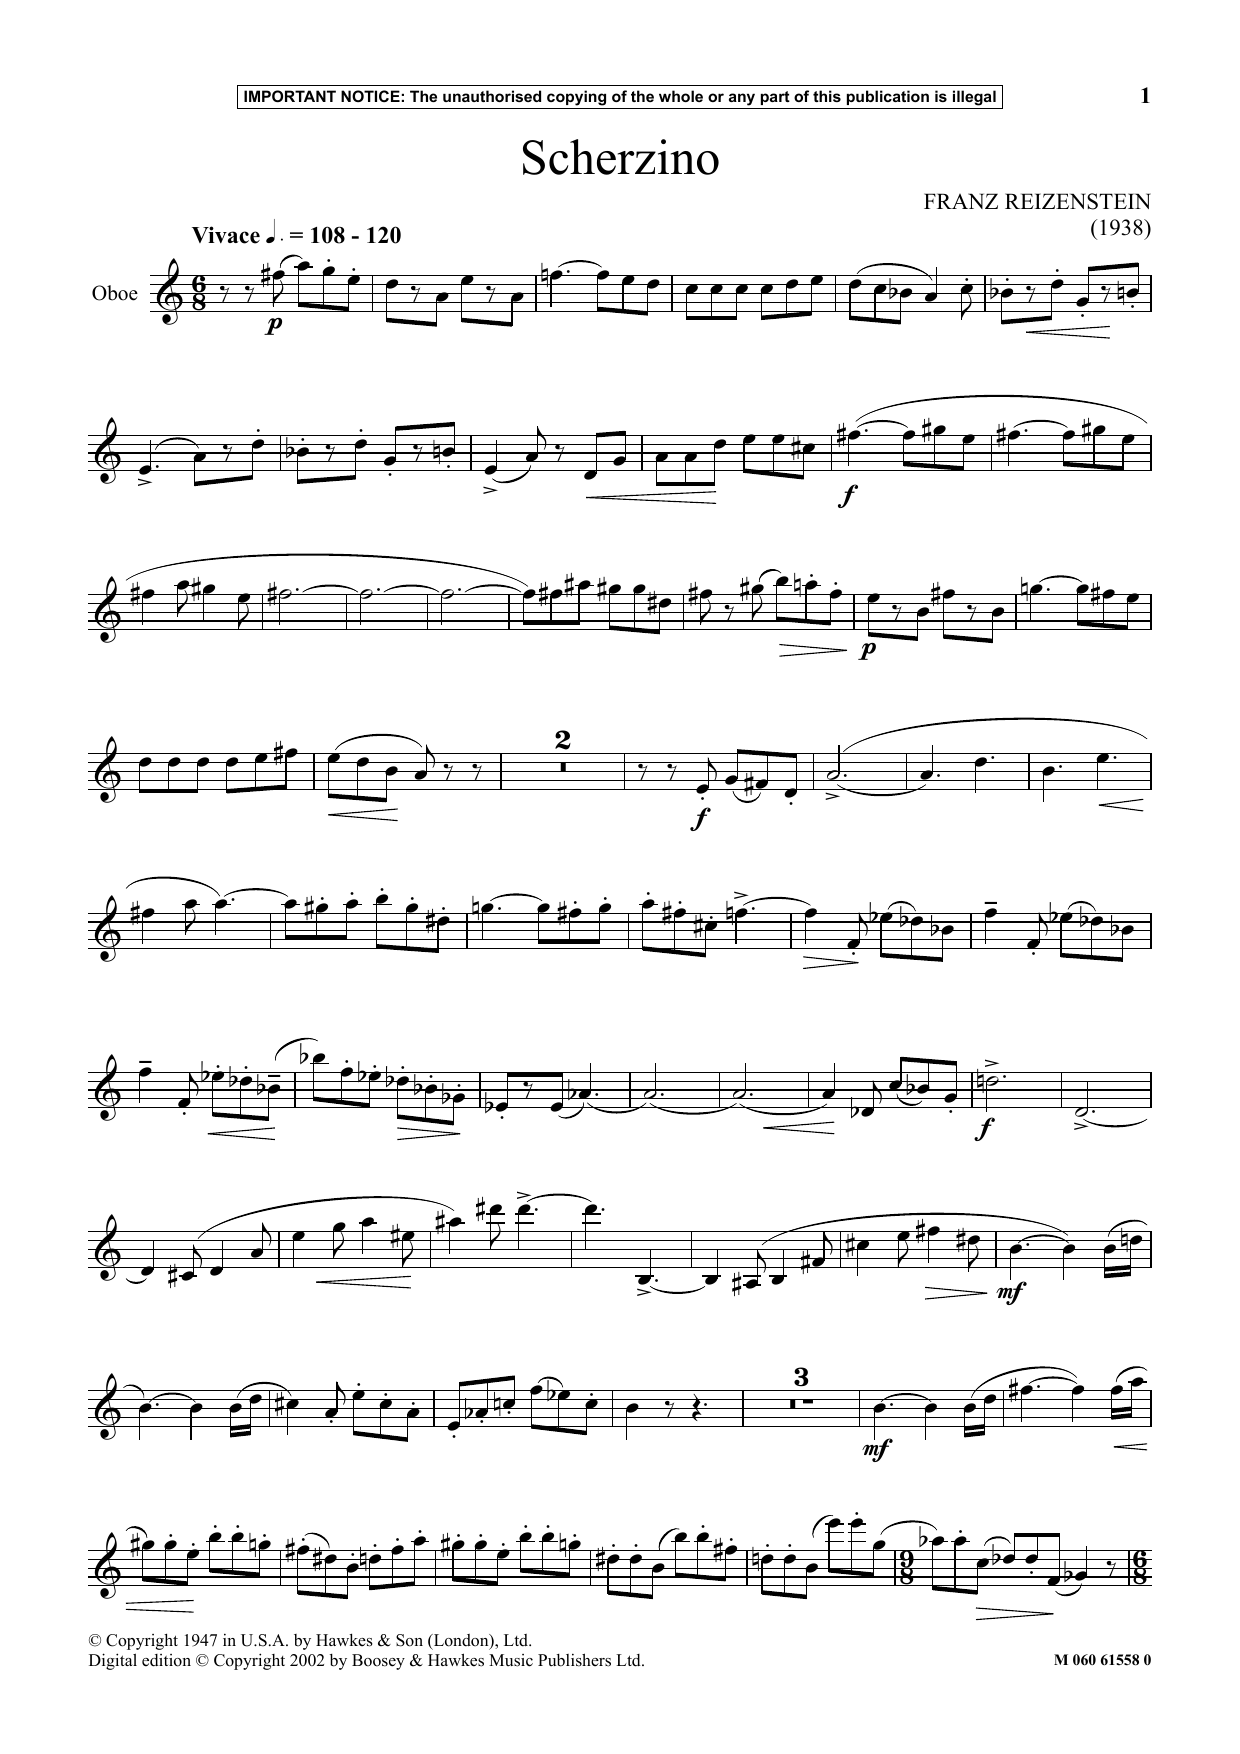 Franz Reizenstein Scherzino Sheet Music Notes & Chords for Instrumental Solo - Download or Print PDF